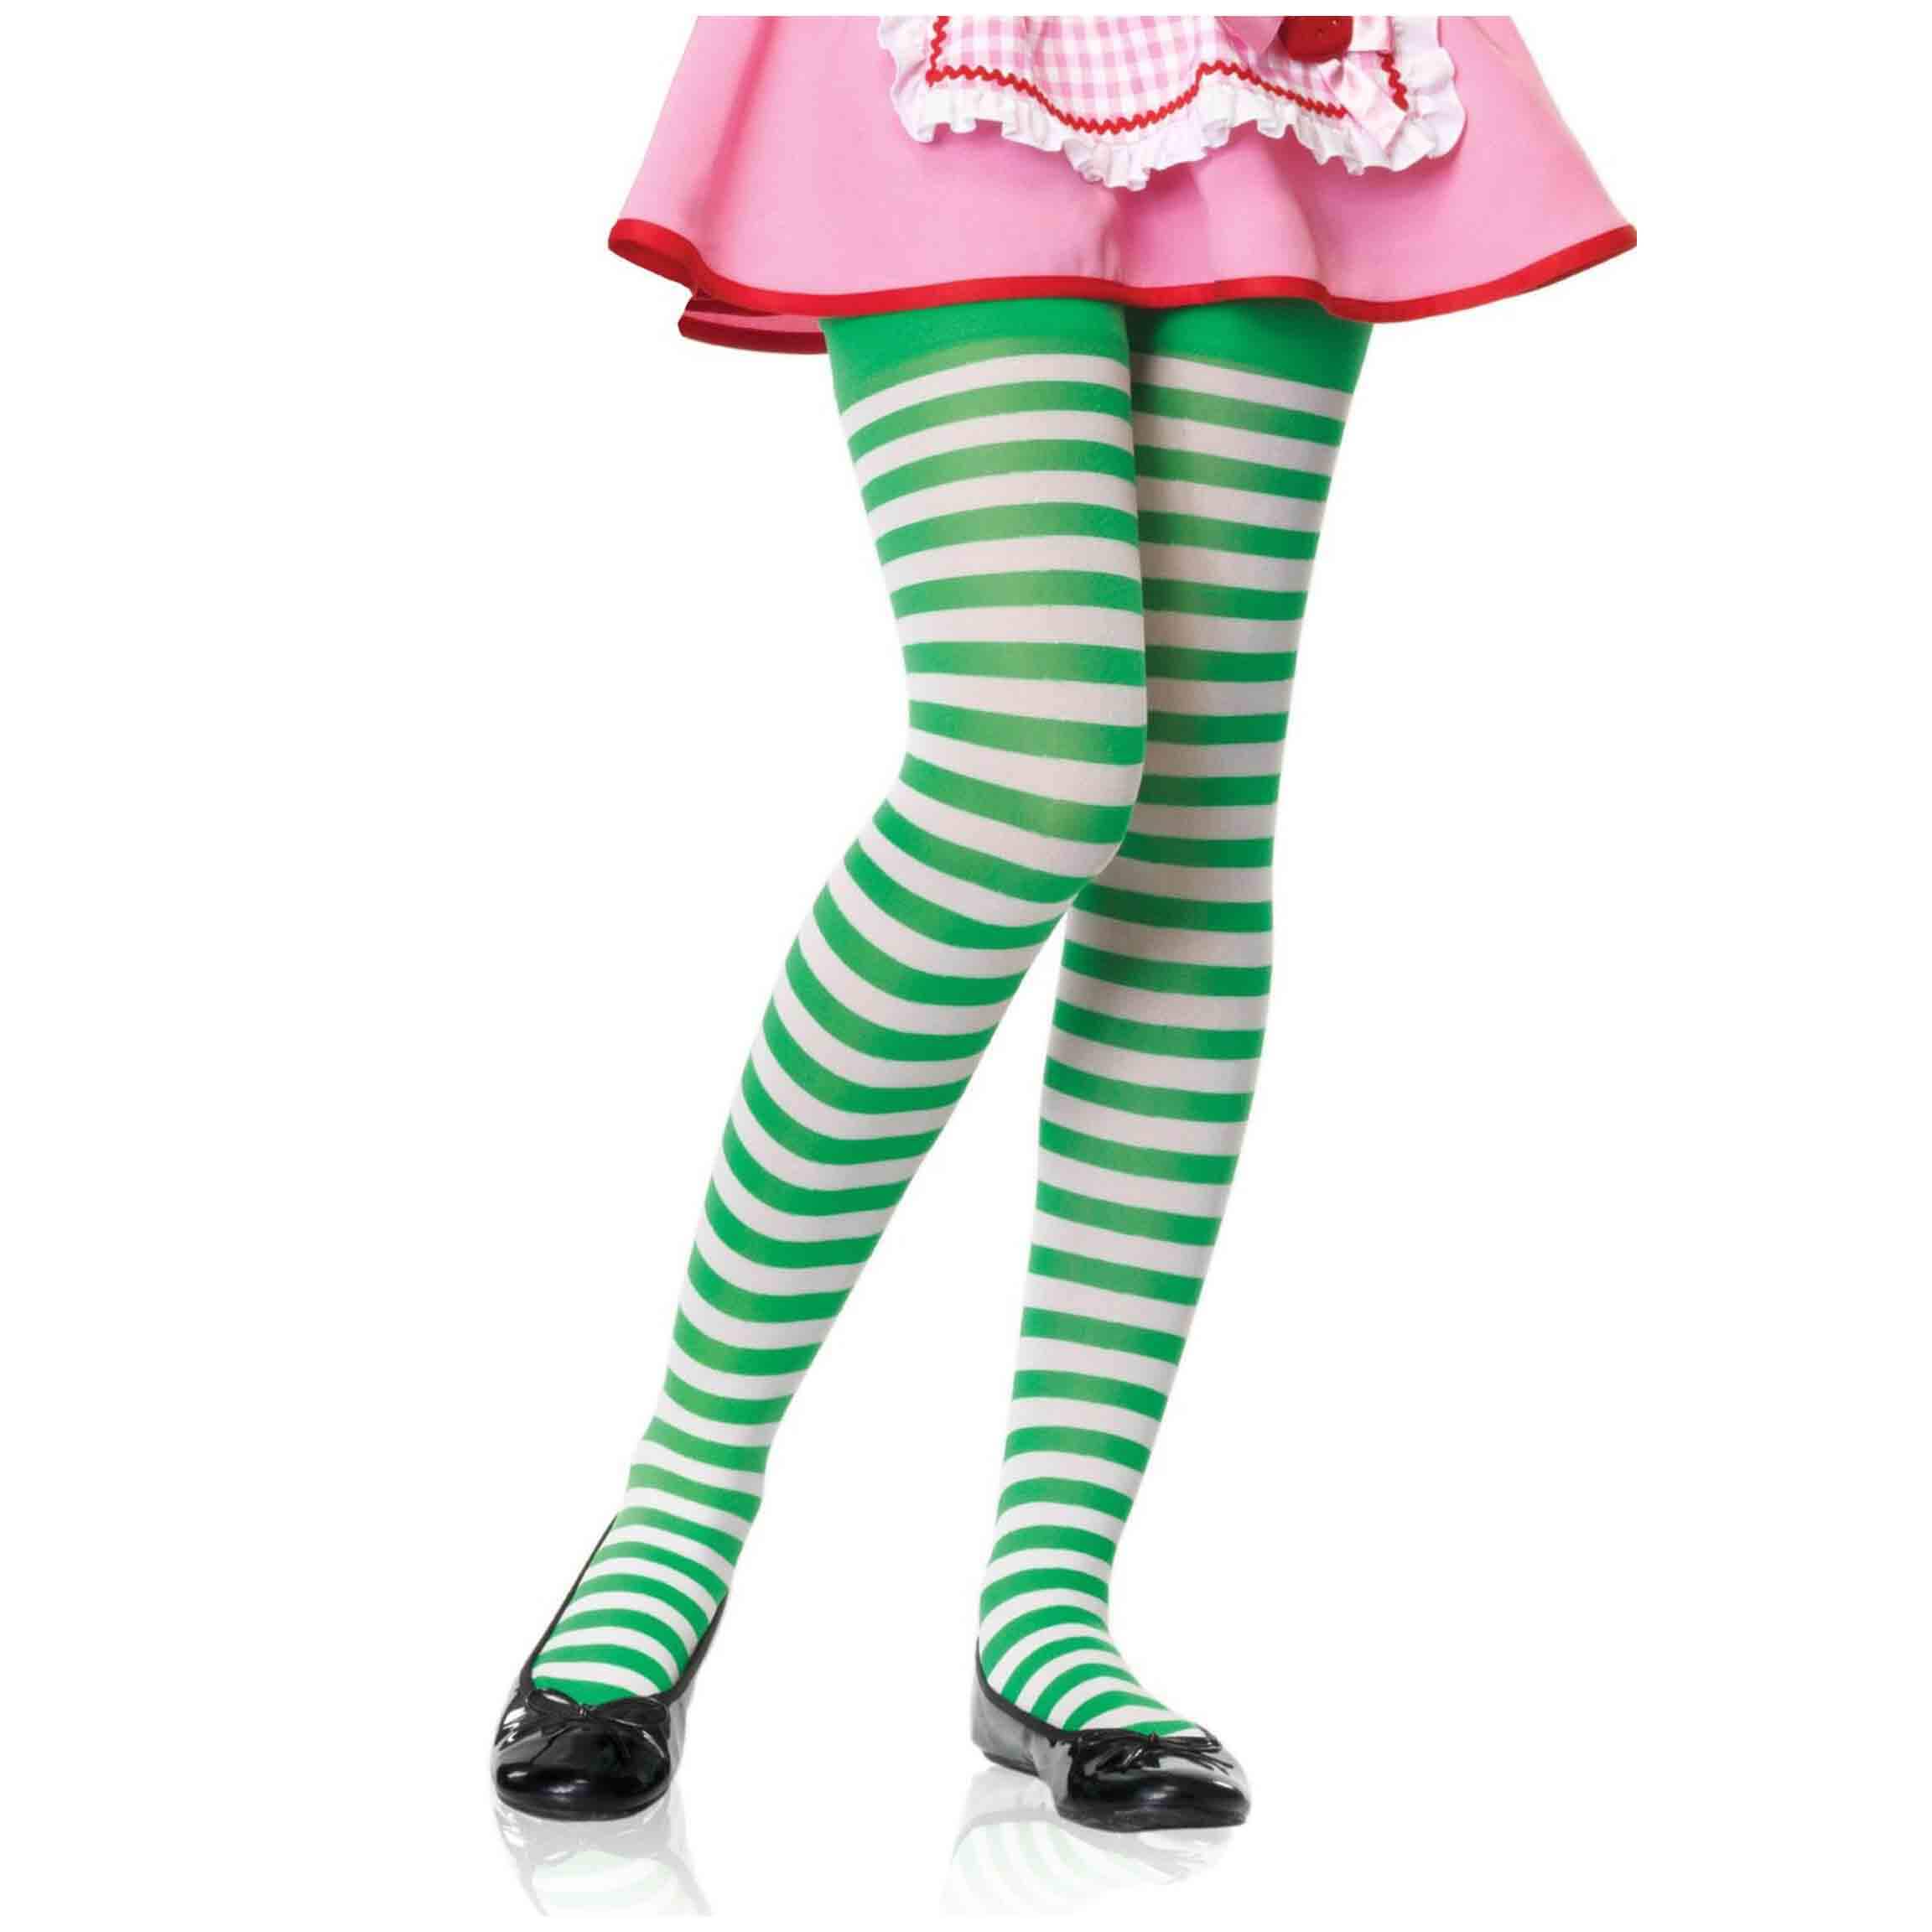 Green legs. Зеленые колготки. Салатовые колготки для девочки. Колготки полосатые детские. Зеленые колготки для девочки.